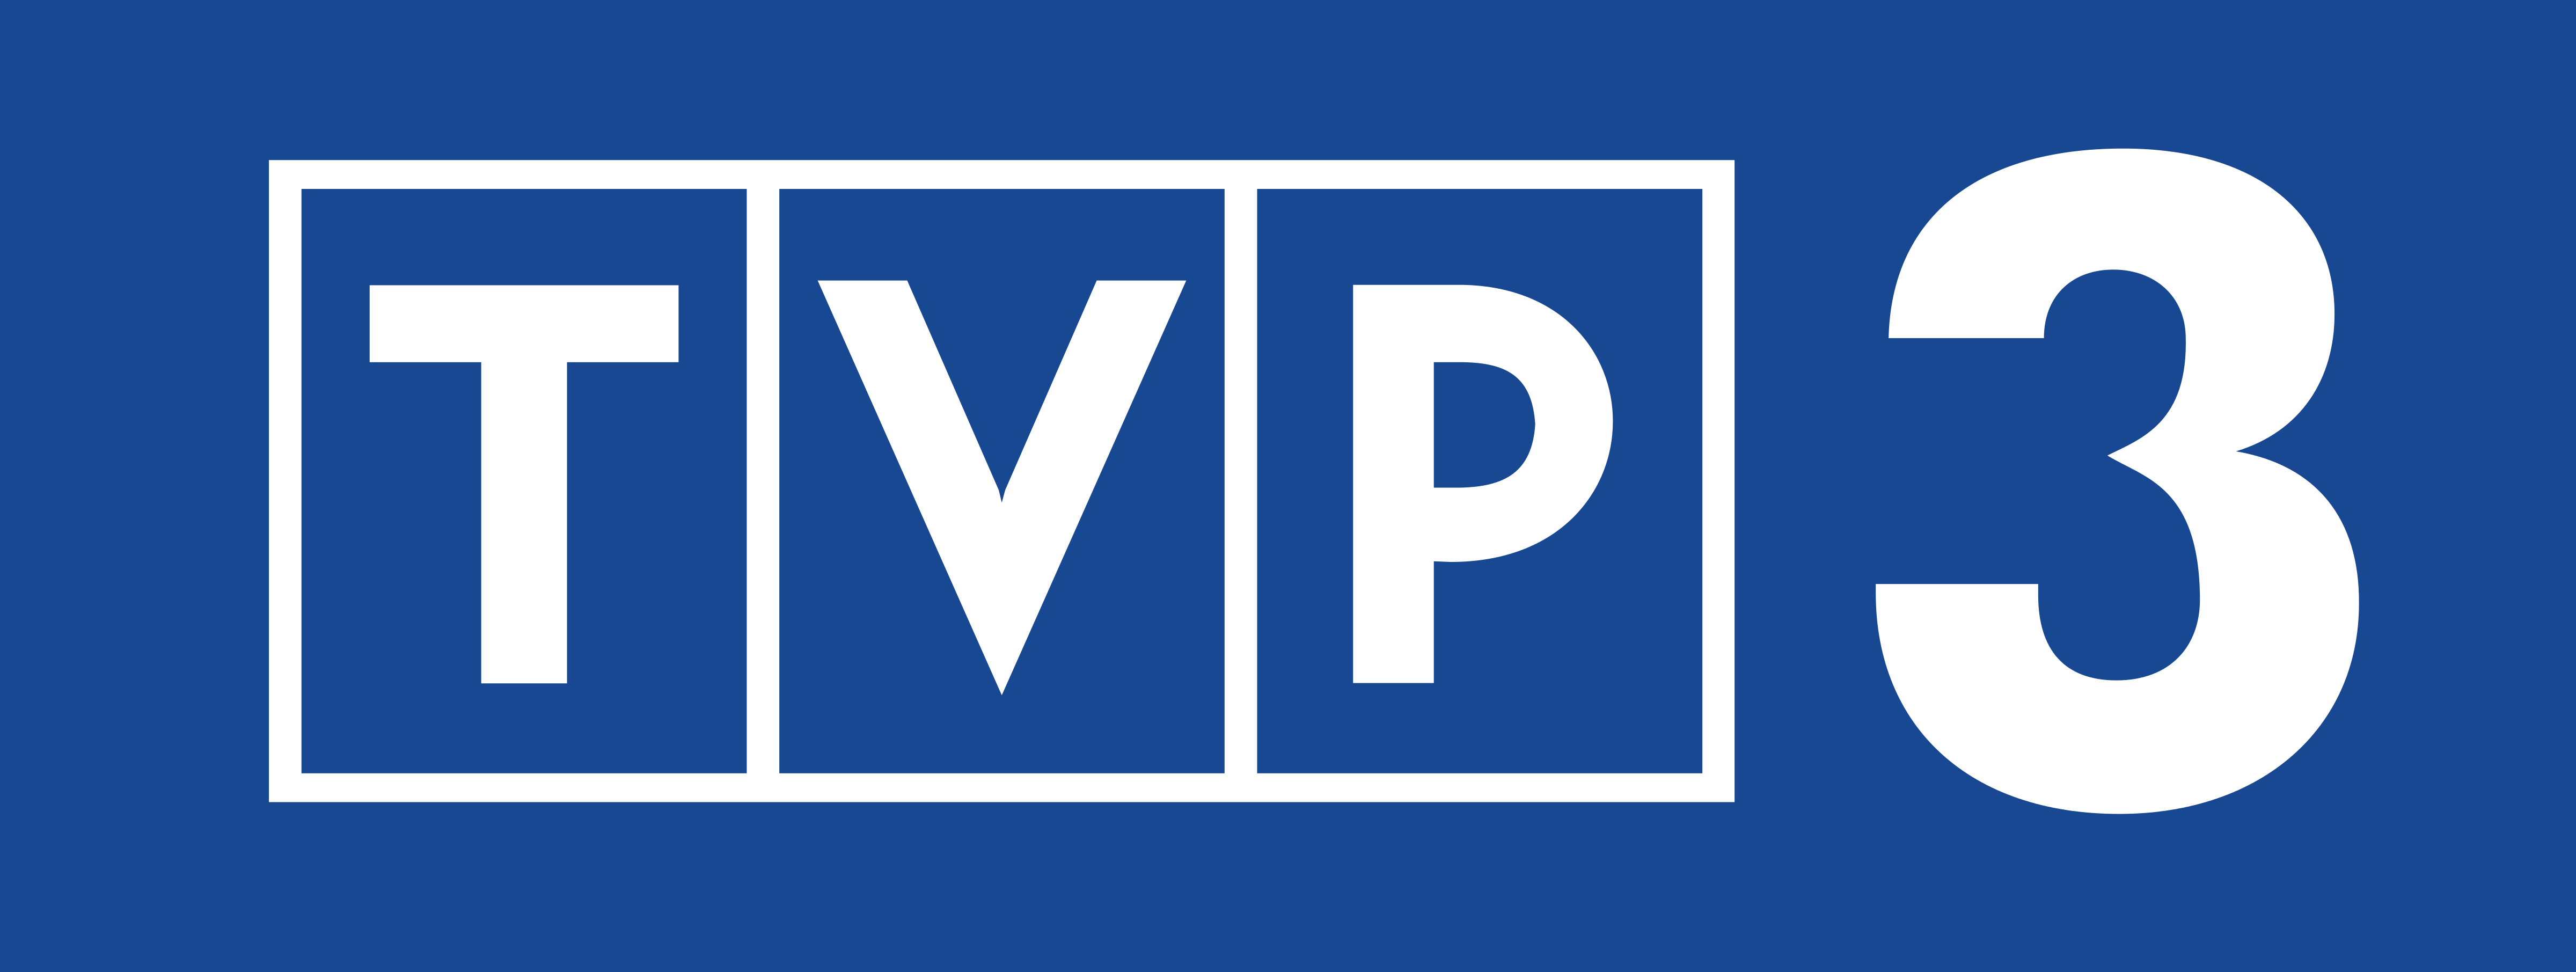 logo stacji TVP3